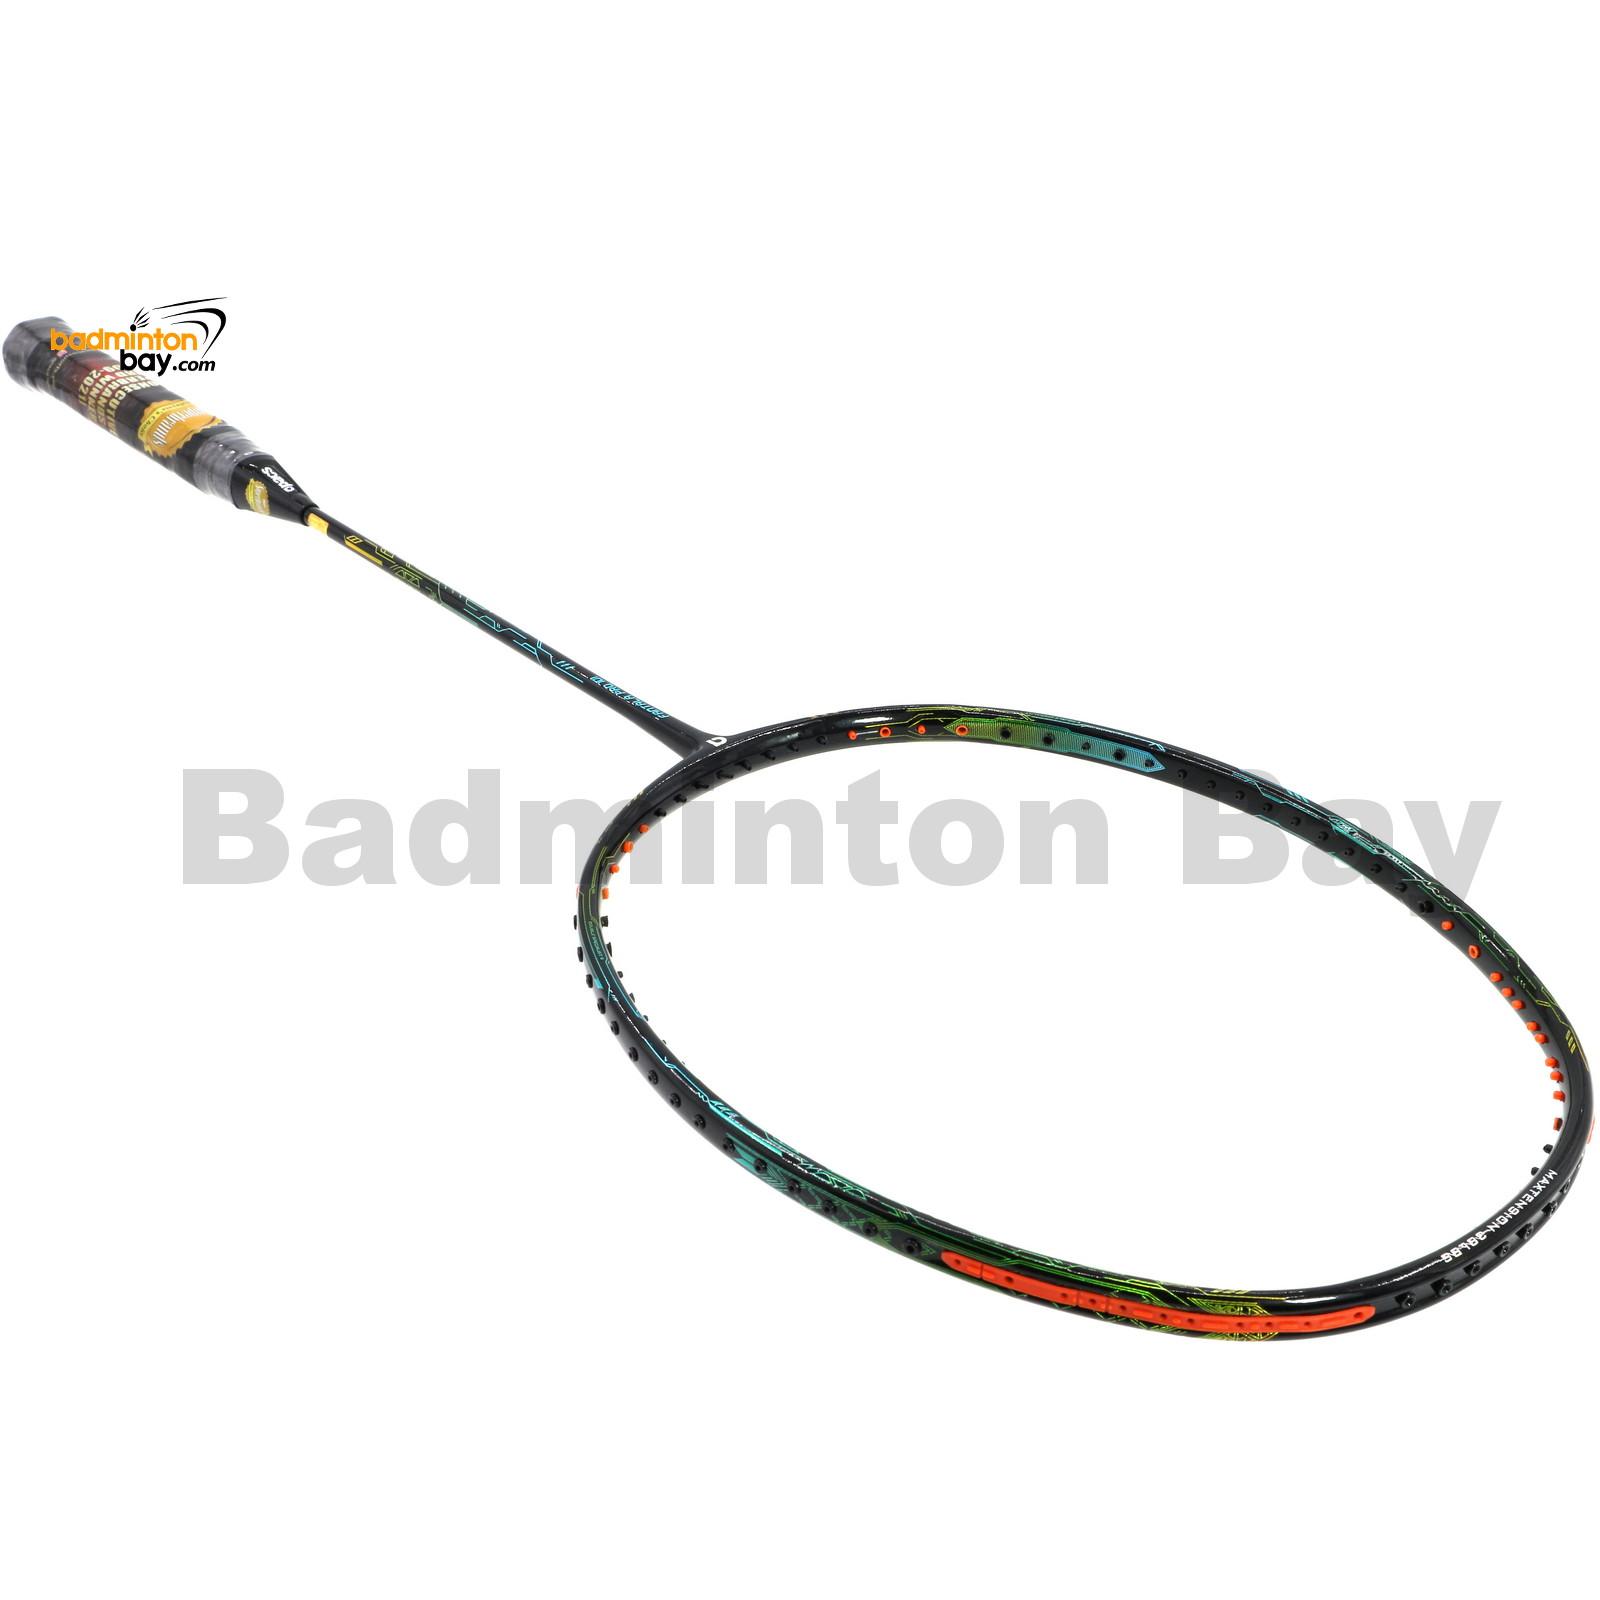 Apacs Fantala Pro  Badminton Racket Compact Frame 3U G1